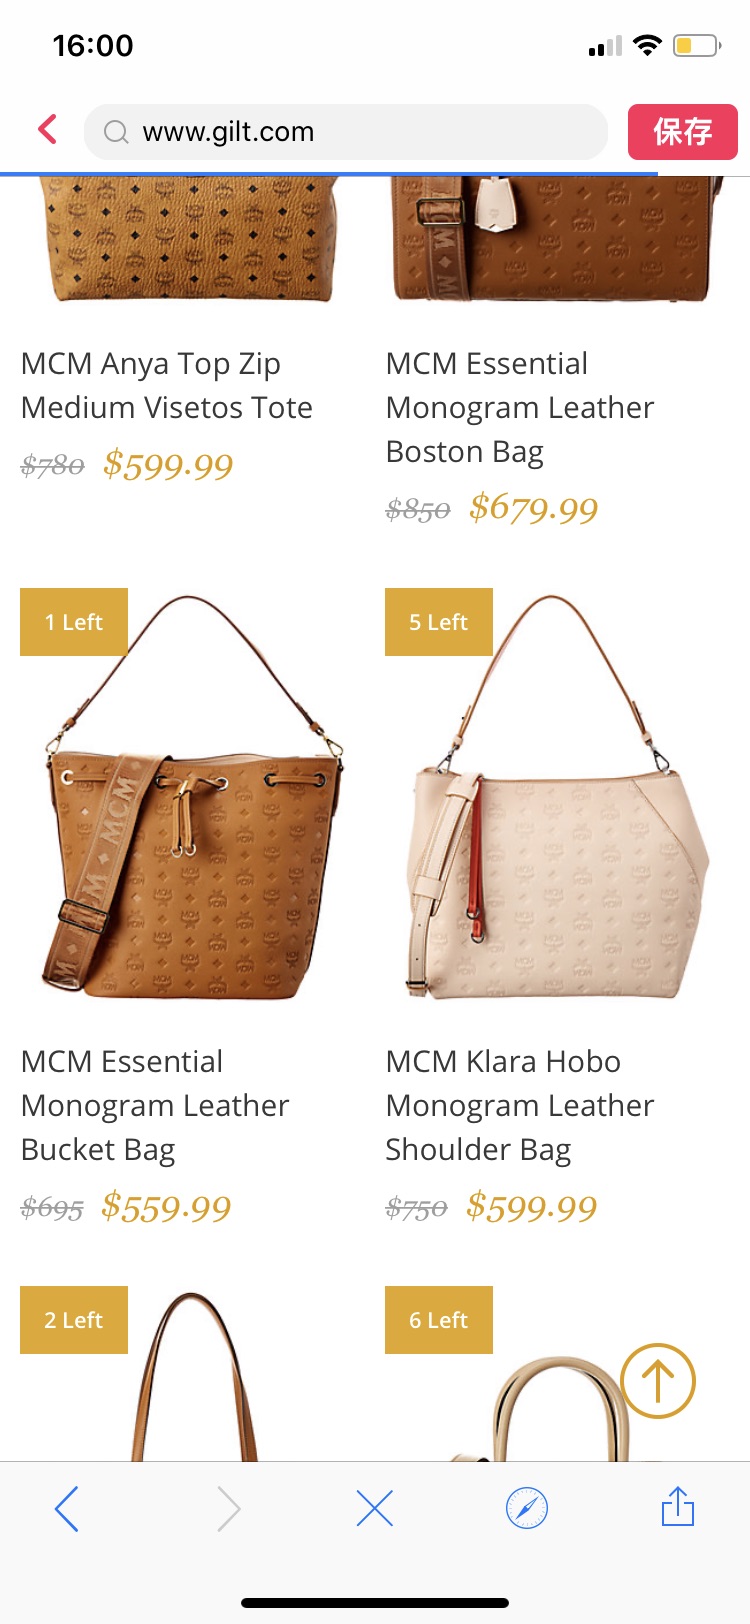 MCM & More Luxe Handbags / Gilt